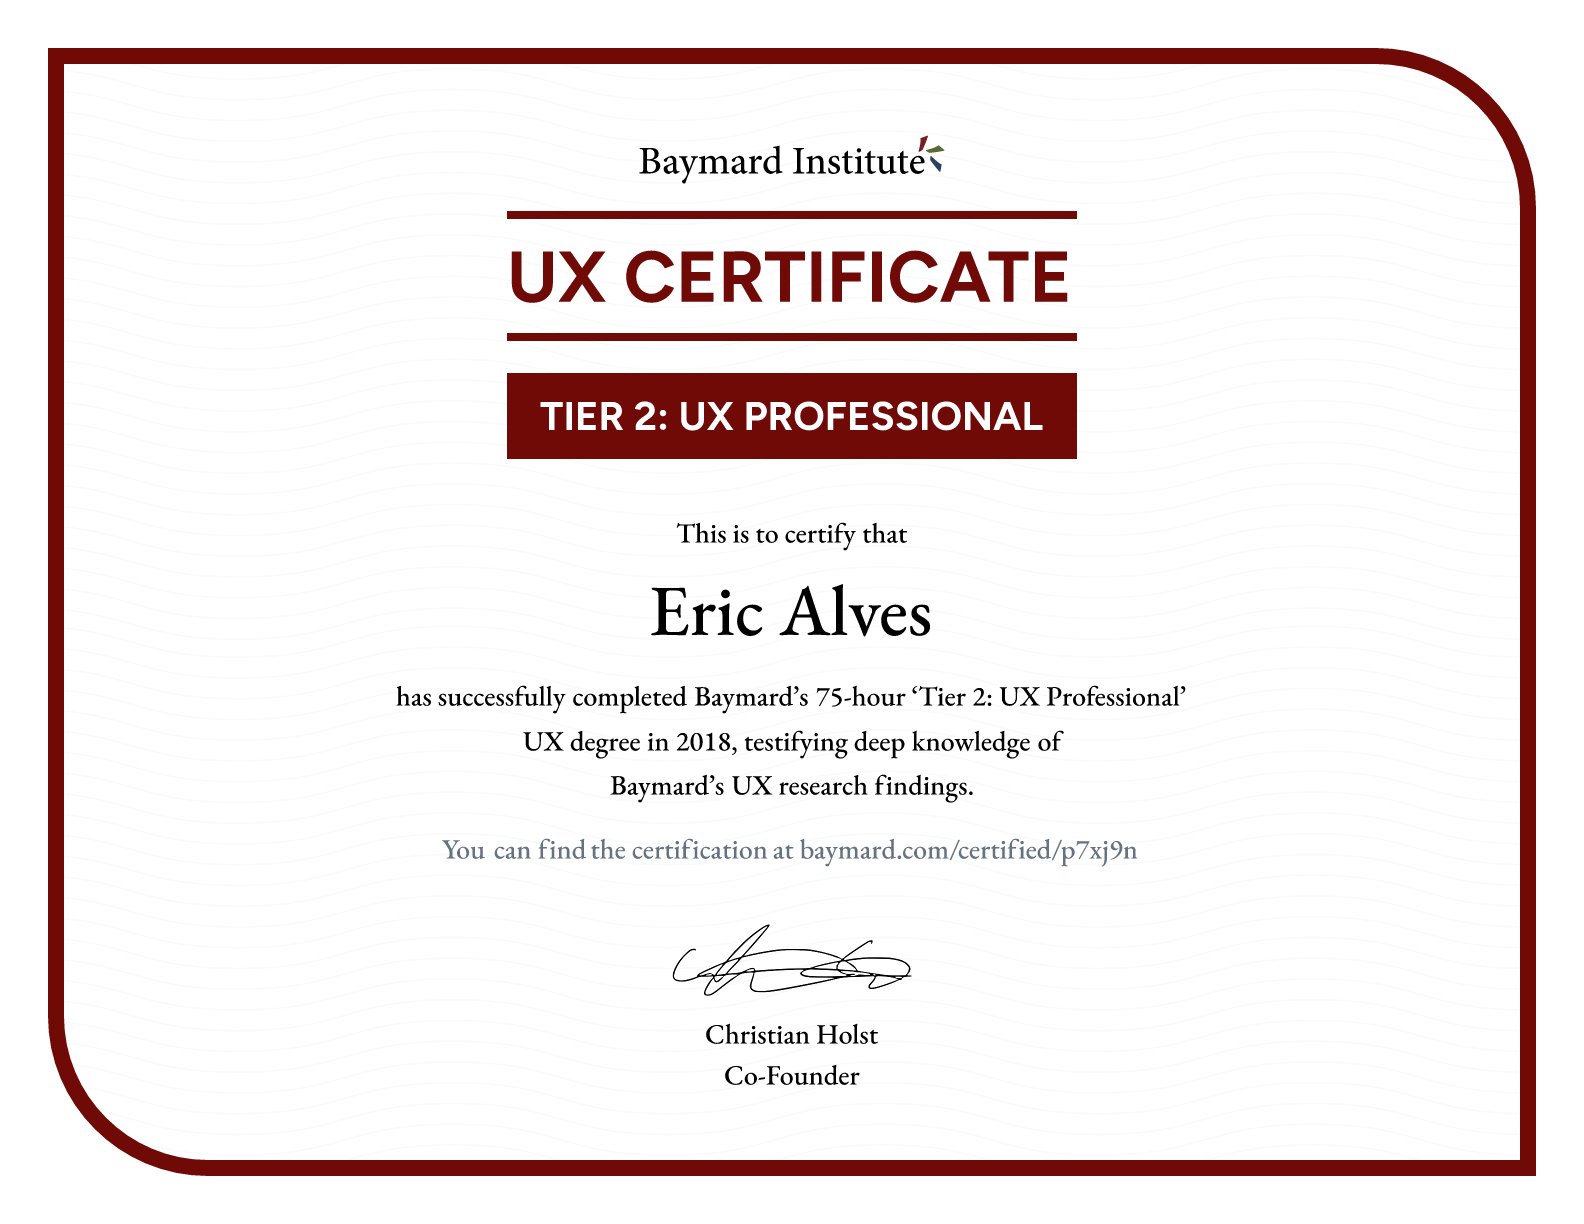 Eric Alves’s certificate